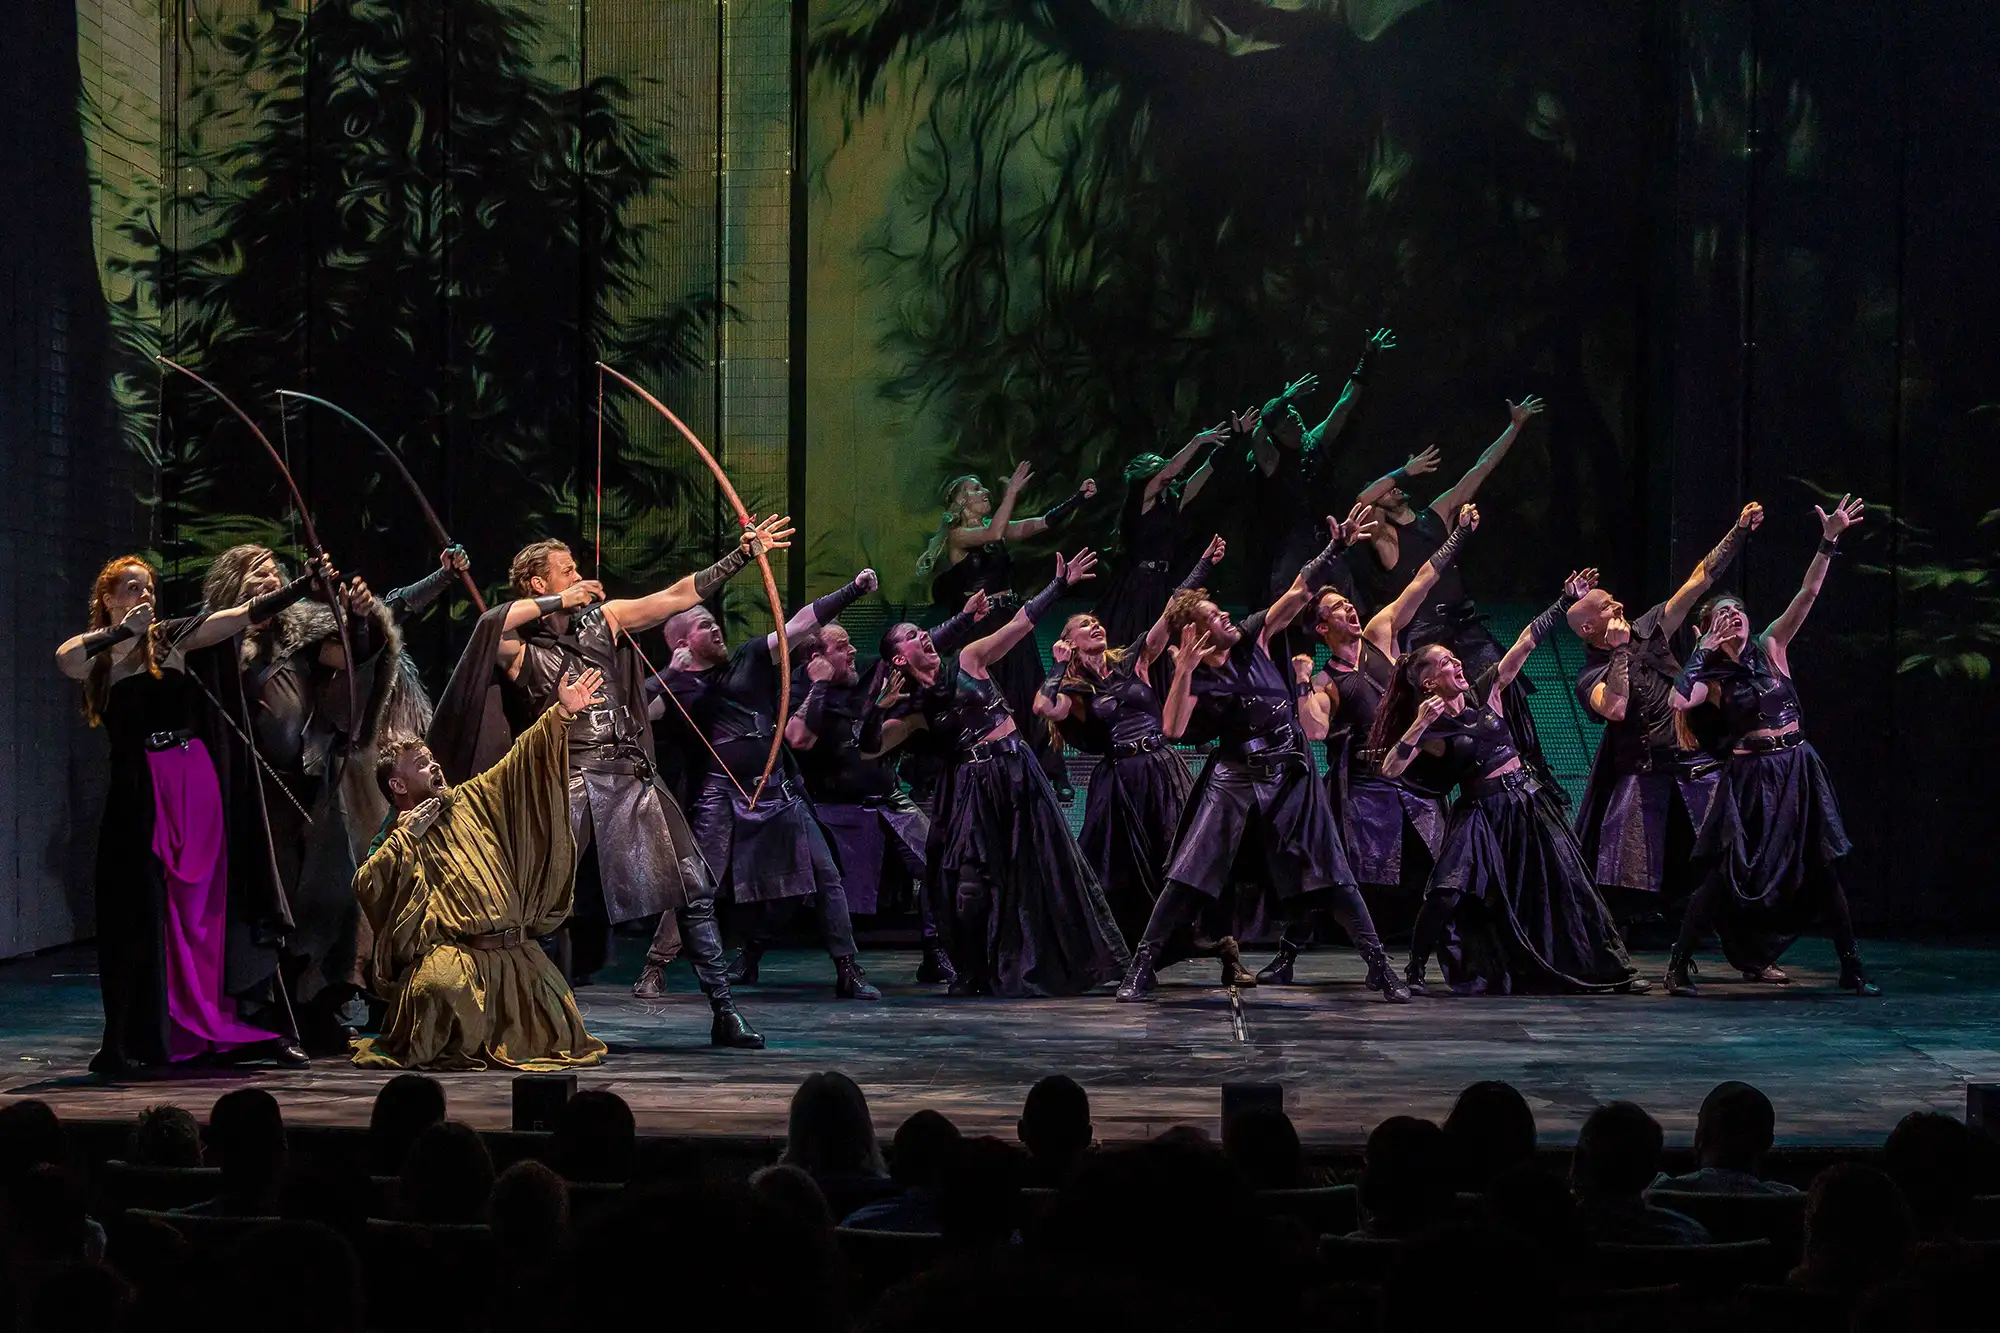 Robin Hood Musical Fulda - Szenenmotiv von 2022 mit Bogenschützen